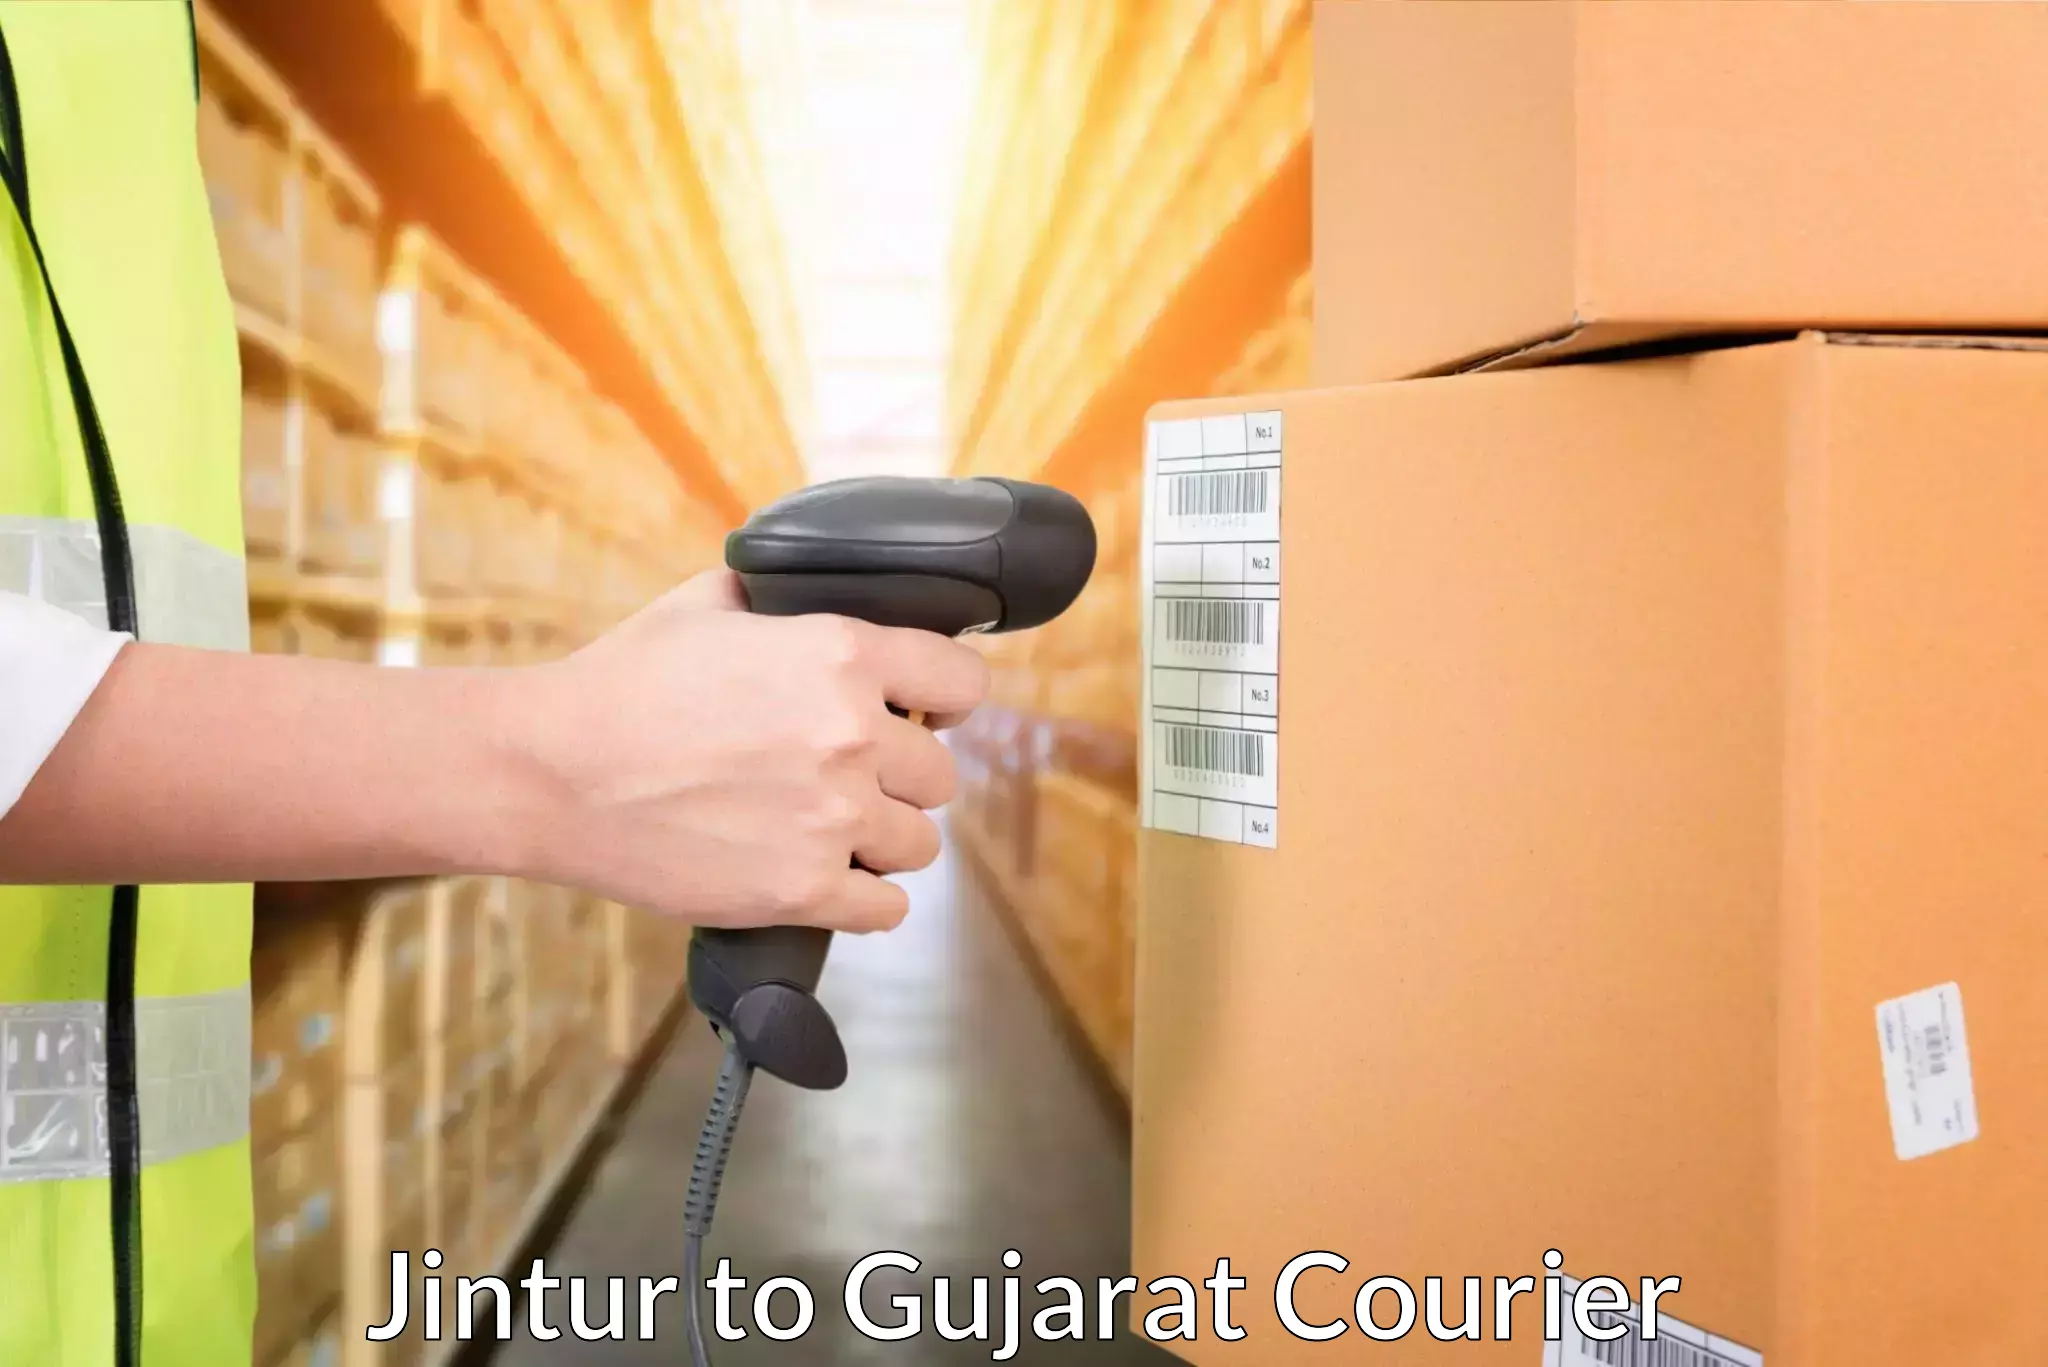 Doorstep delivery service Jintur to NIT Surat